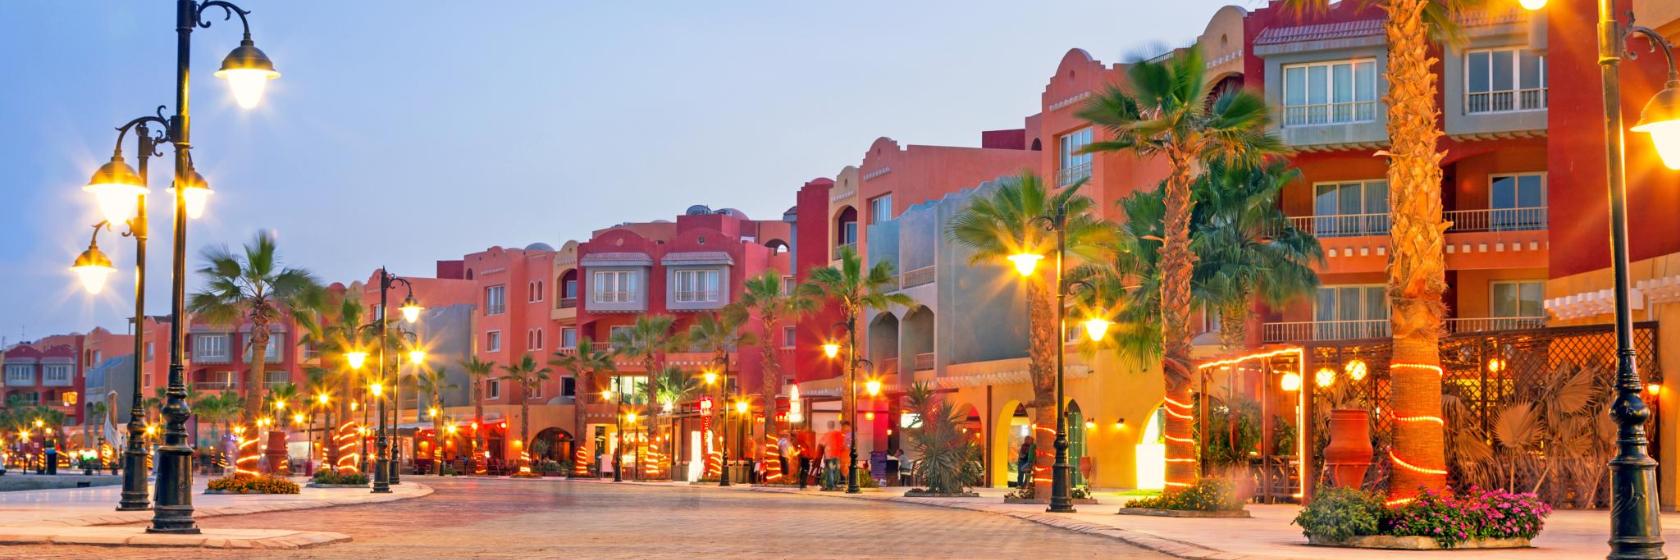 أفضل 10 فنادق بالقرب من وسط مدينة الغردقة - ميدان السقالة في الغردقة، مصر